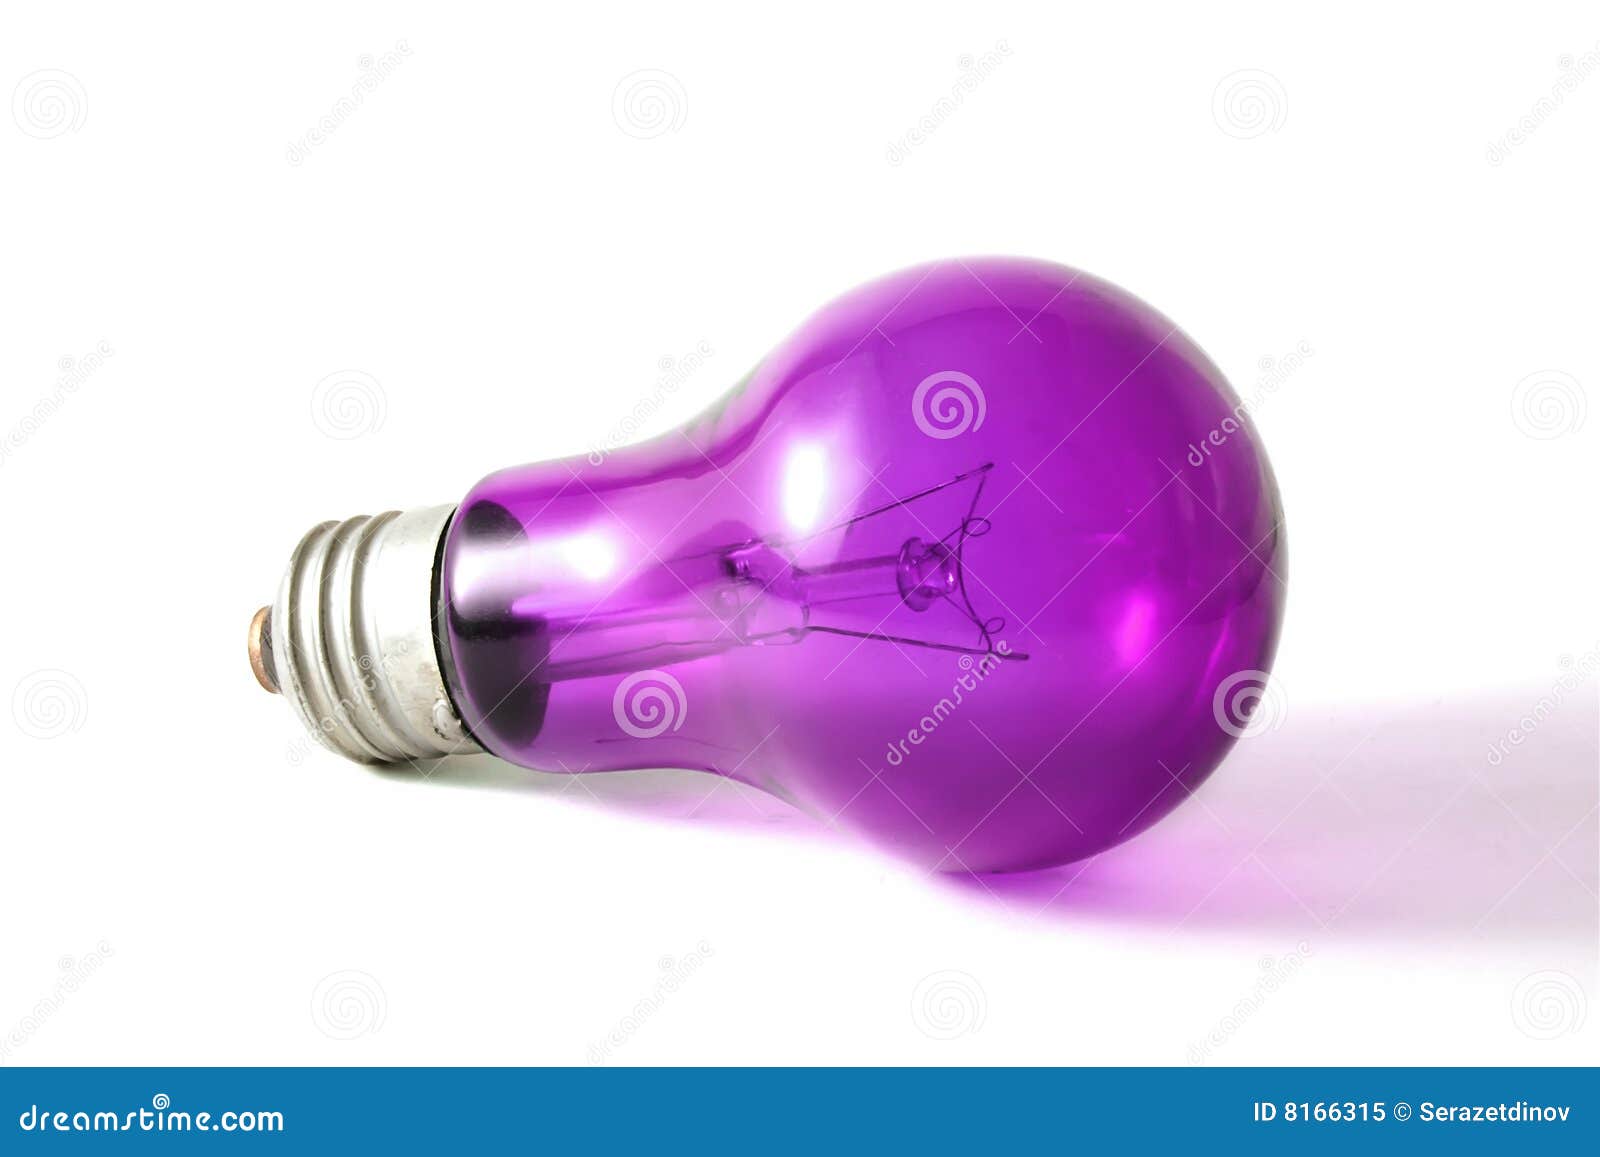 Включи лампочку 25. Фиолетовая лампочка. Фиолетовая лампа фон. Лампочка фиолетового цвета. Цветные лампы накаливания.